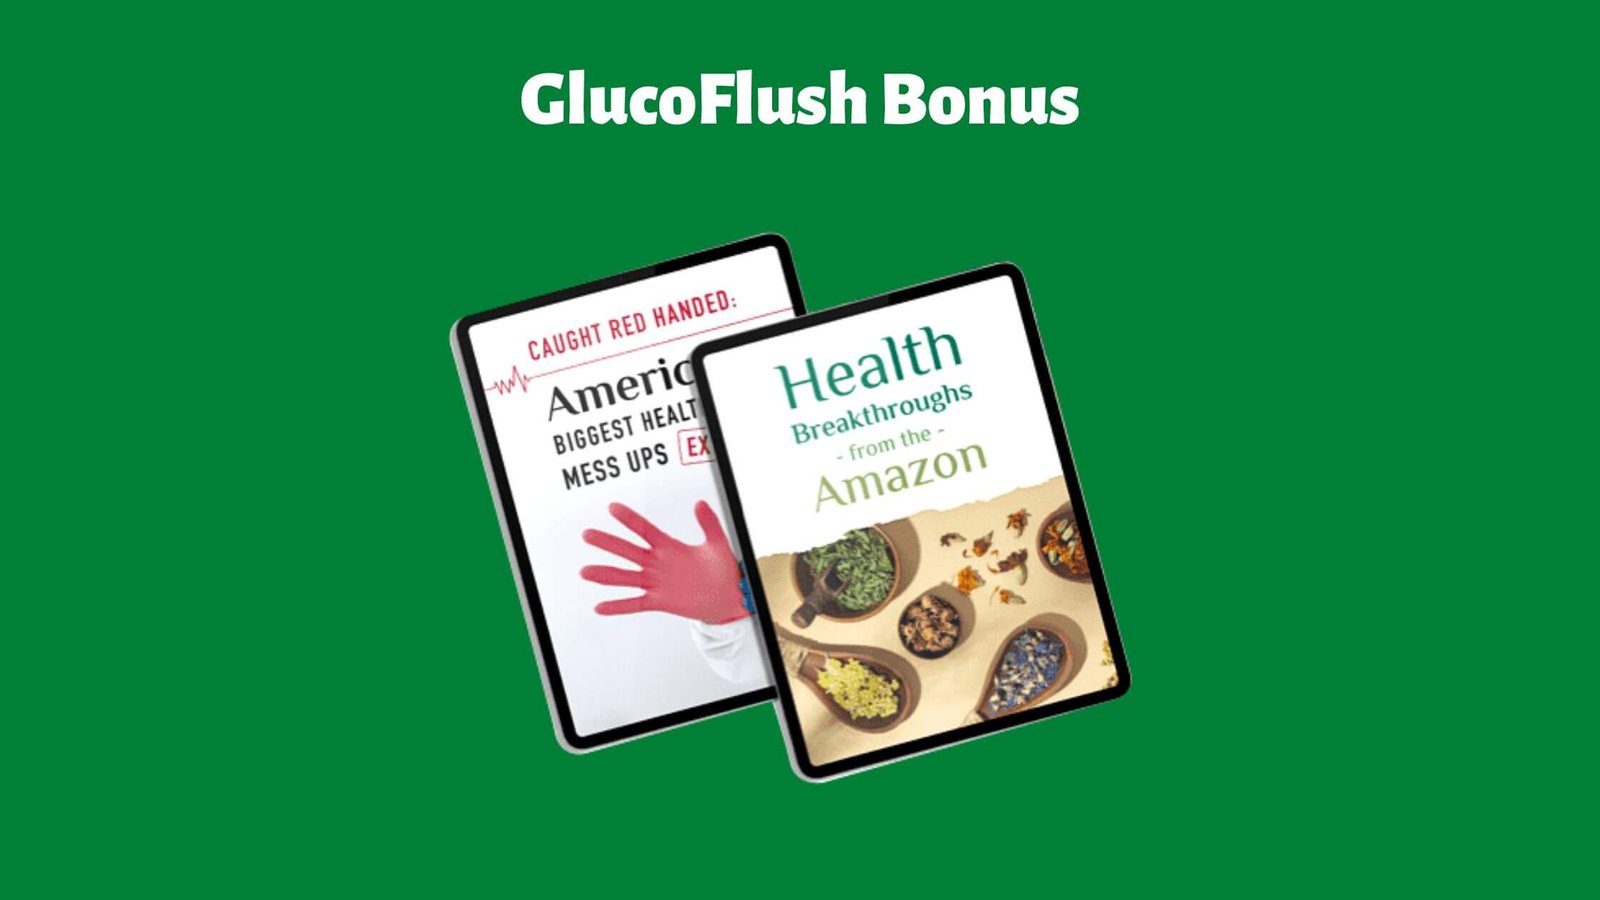 GlucoFlush Bonus